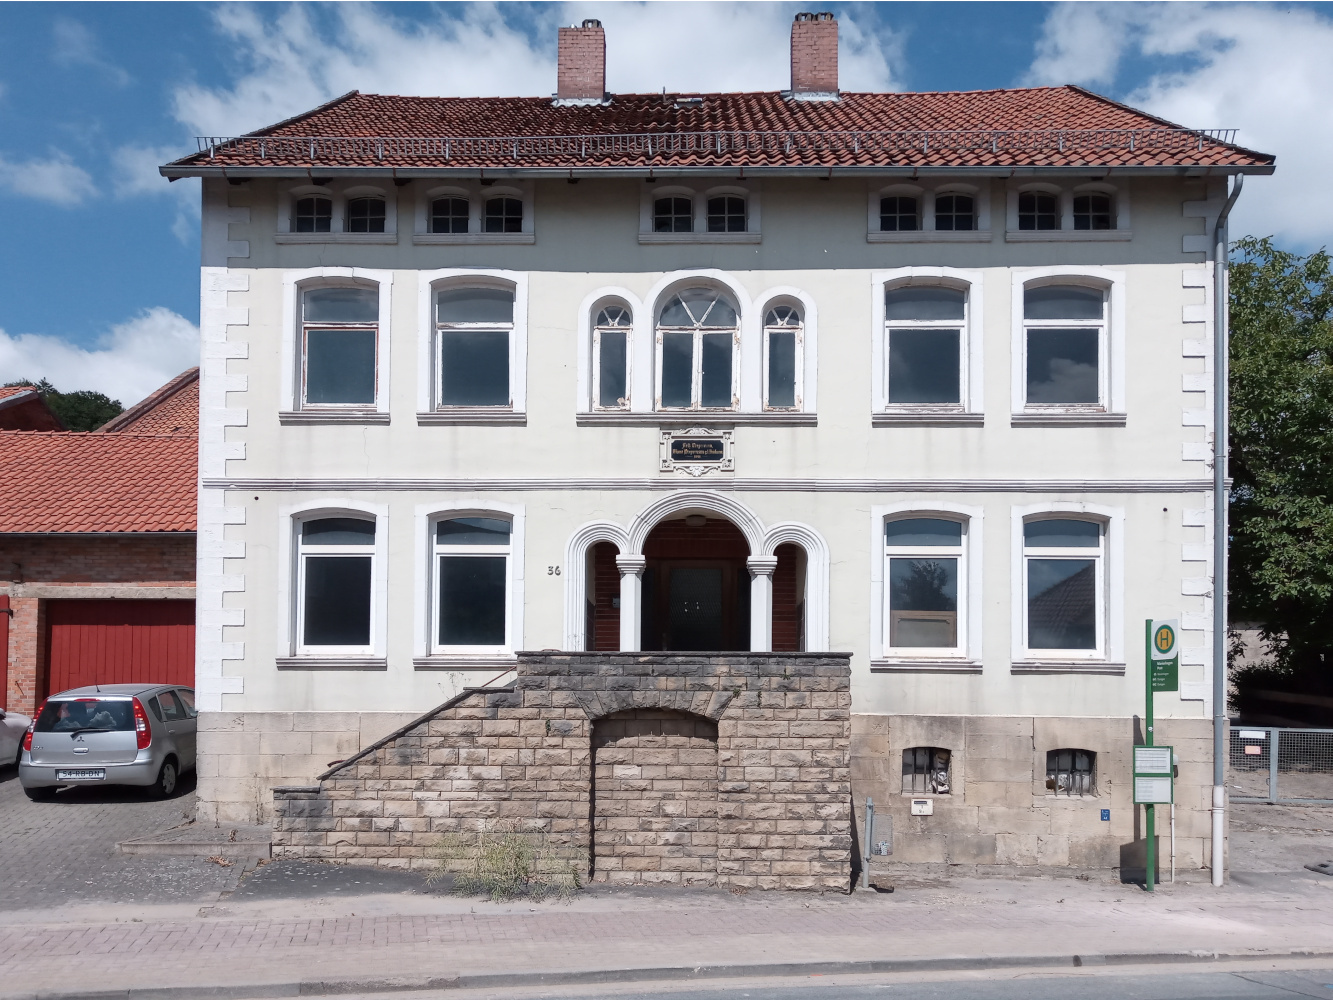 Wohnhaus der Familie Vespermann in Marienhagen